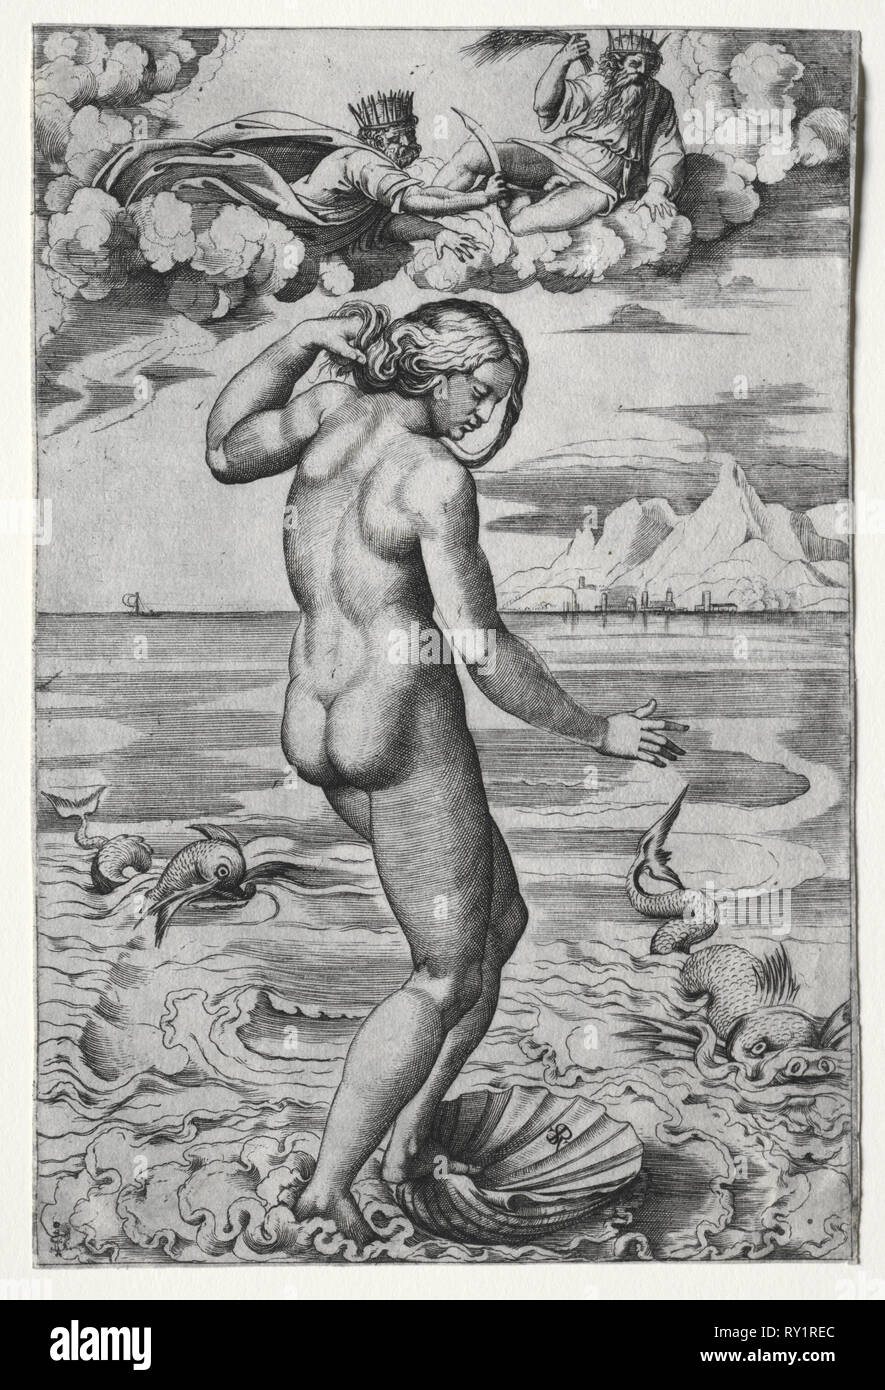 La Naissance de Vénus, ch. 1516. Marco dente (Italien), ch. 1486-1527), après Raphael (italien, 1483-1520). Gravure Banque D'Images